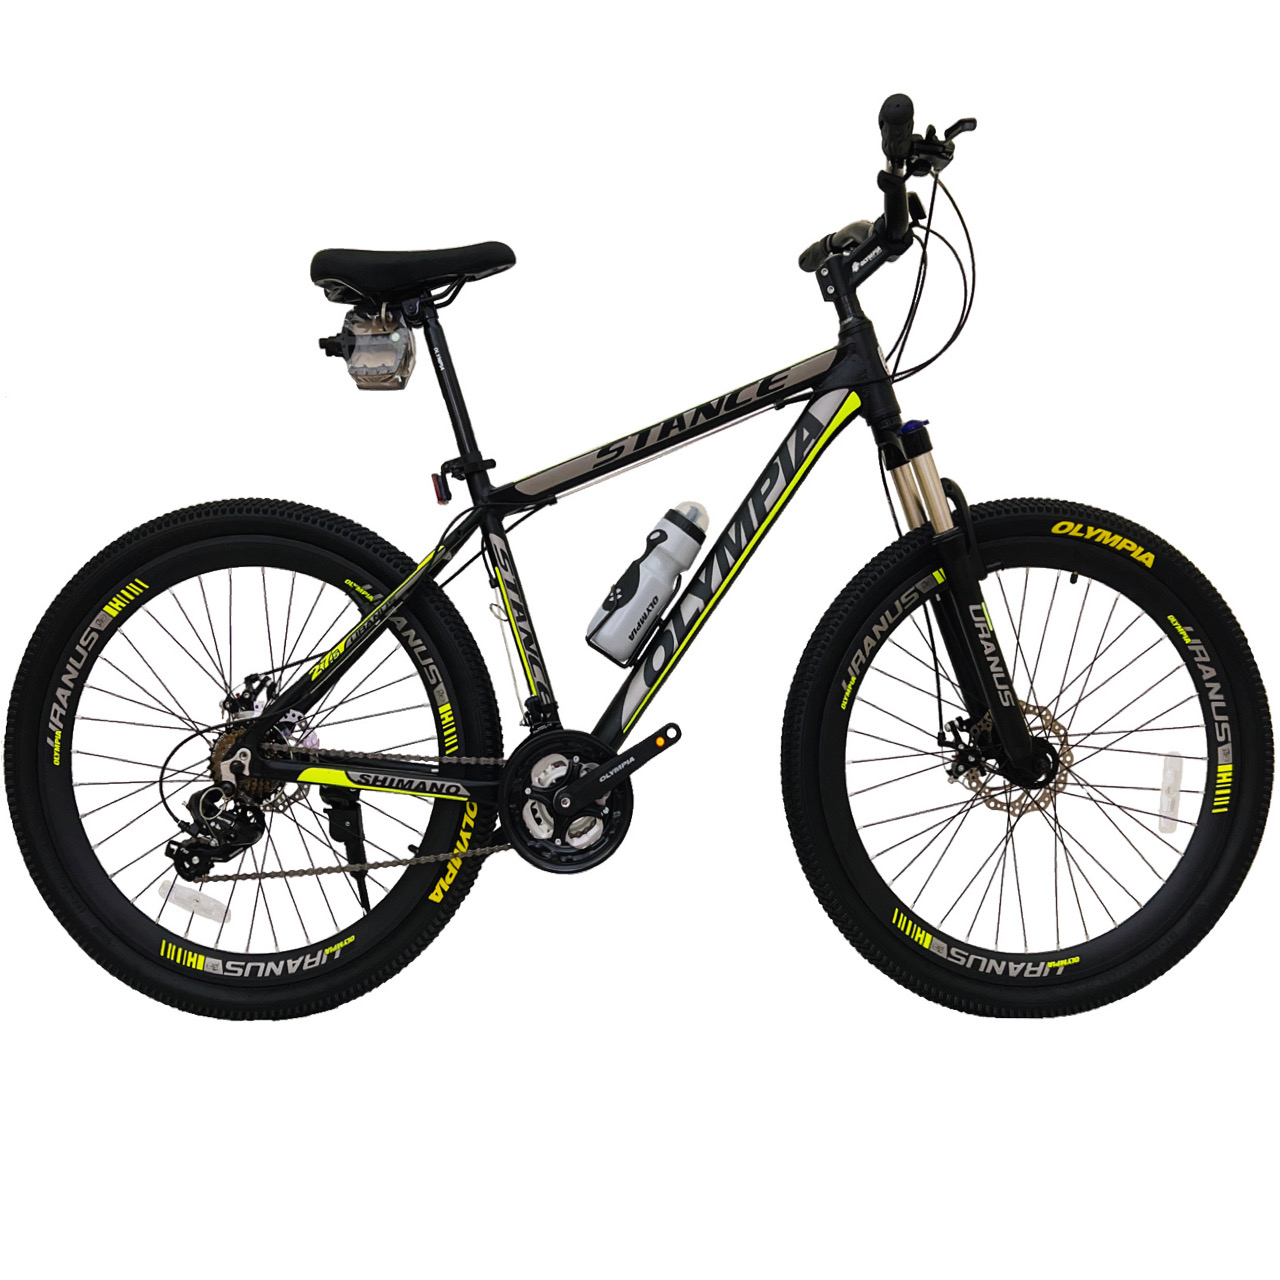 نکته خرید - قیمت روز دوچرخه کوهستان المپیا مدل STANCE کد دیسکی سایز 27.5 خرید